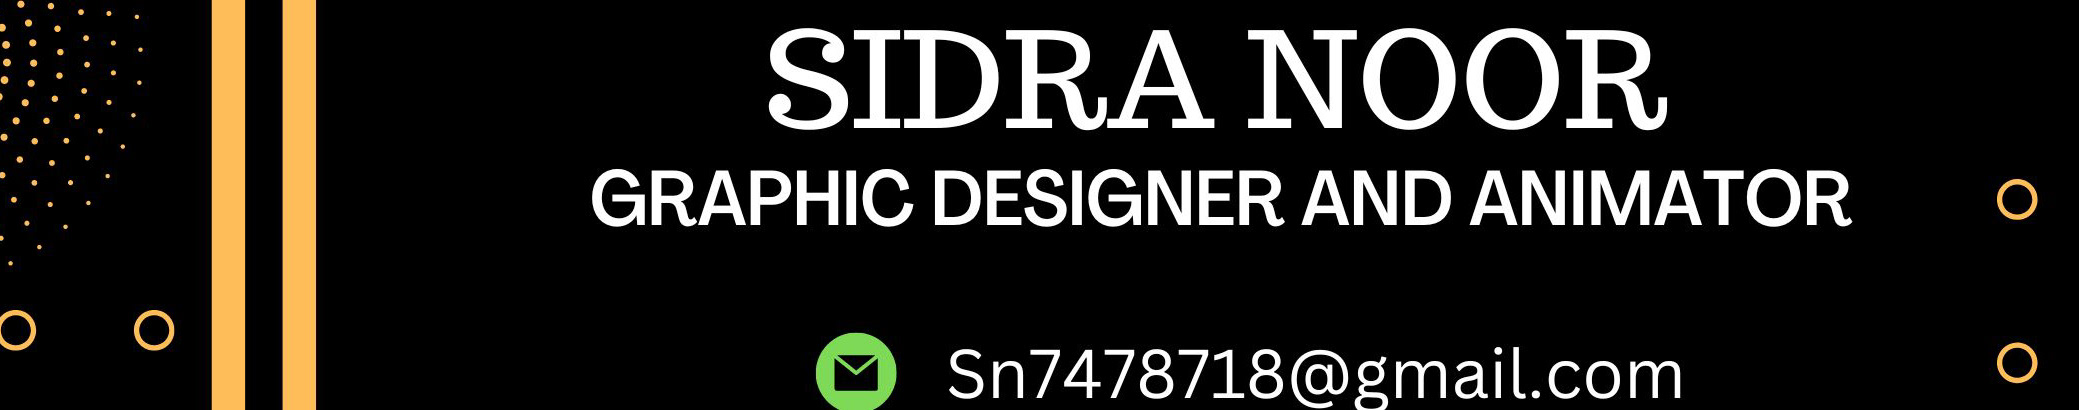 sidra noor's profile banner